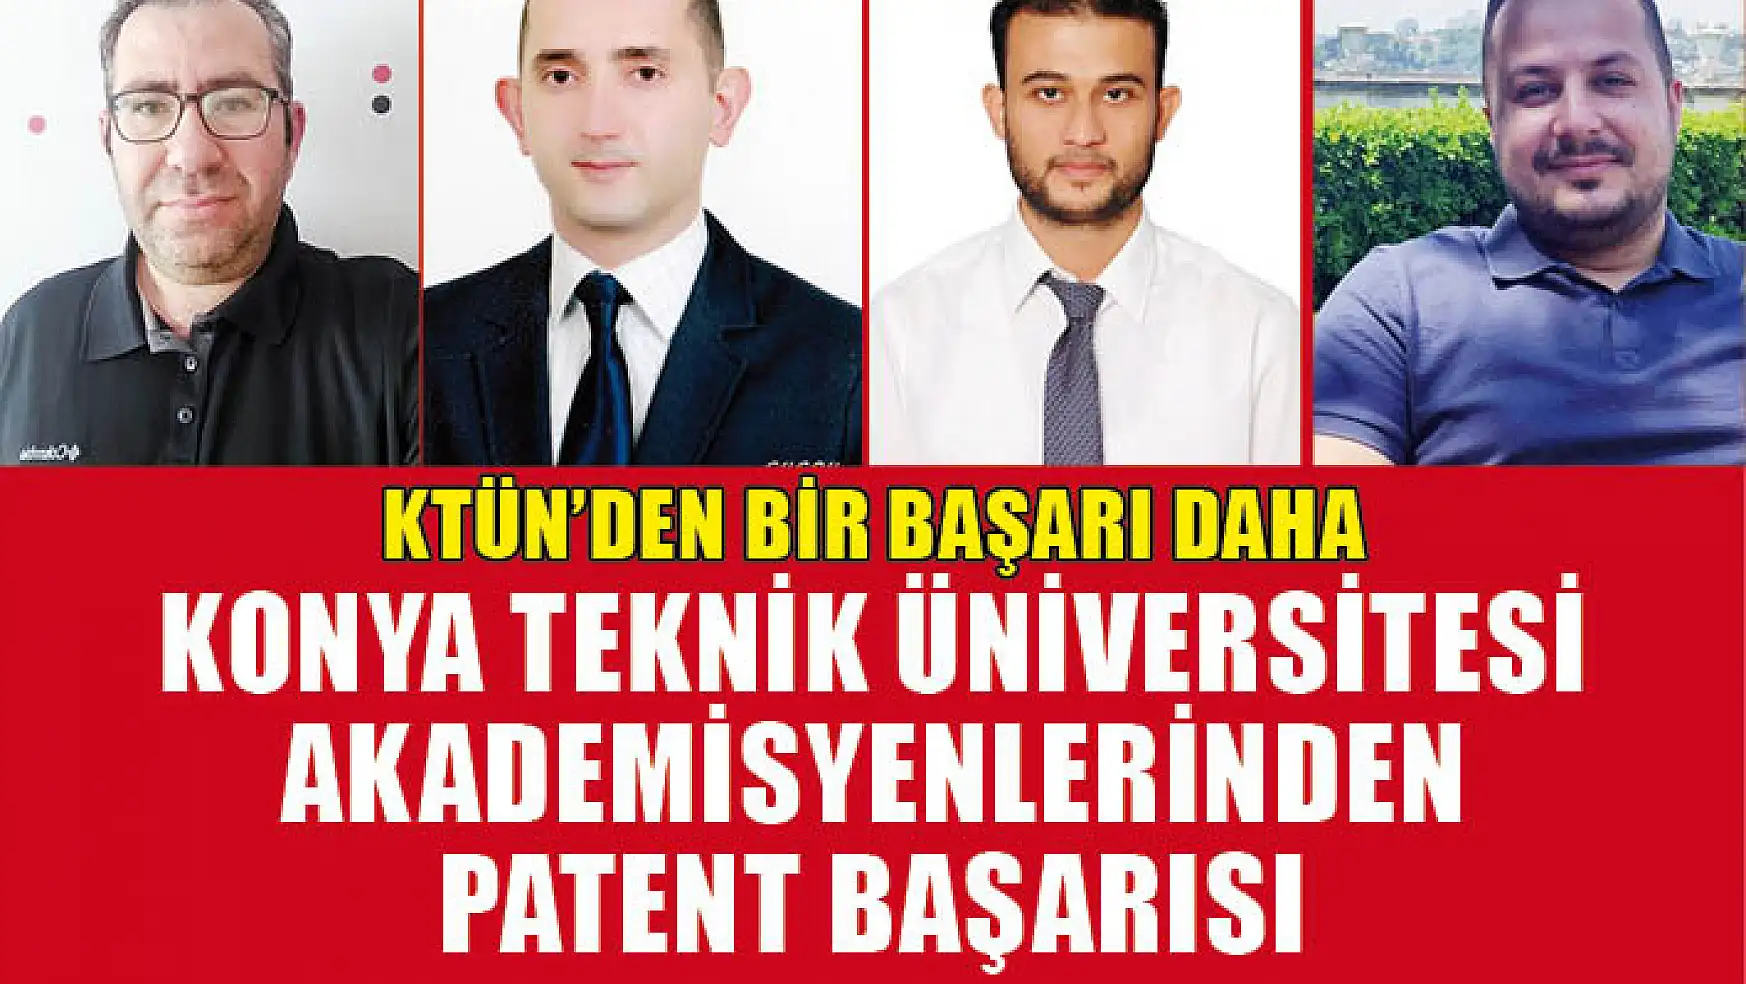 Konya Teknik Üniversitesi Akademisyenlerinden Patent Başarısı